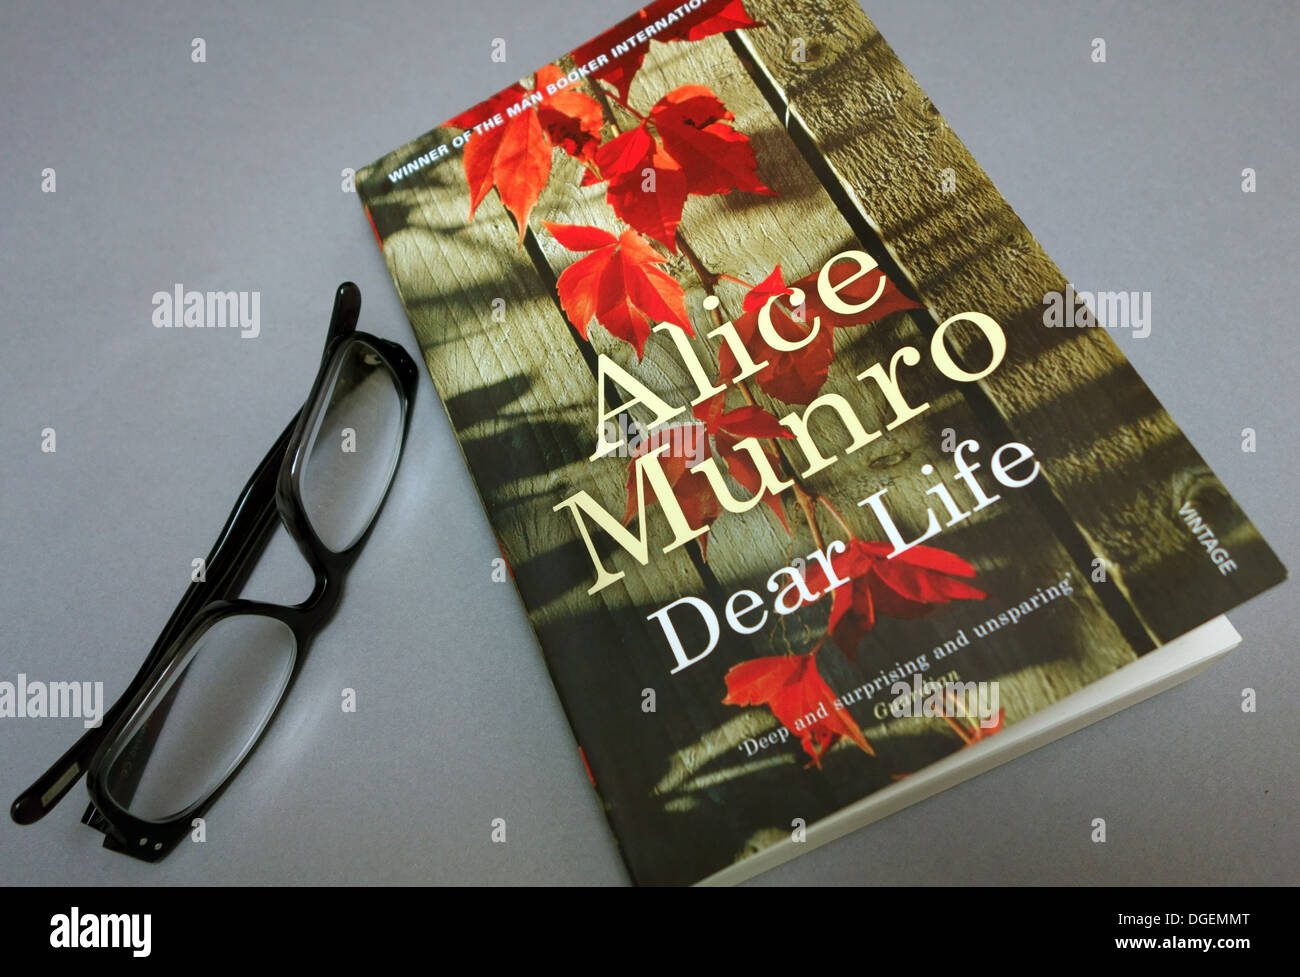 Kanadische Schriftstellerin Alice Munro gewinnt 2013 Nobelpreis für Literatur, London Stockfoto